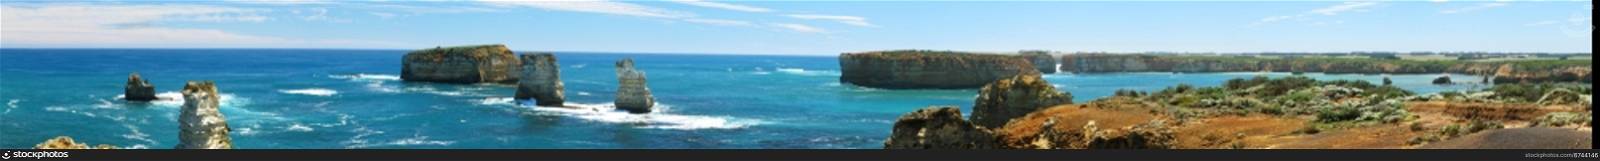 panorama coast of australia. panorama of the south coast of australia